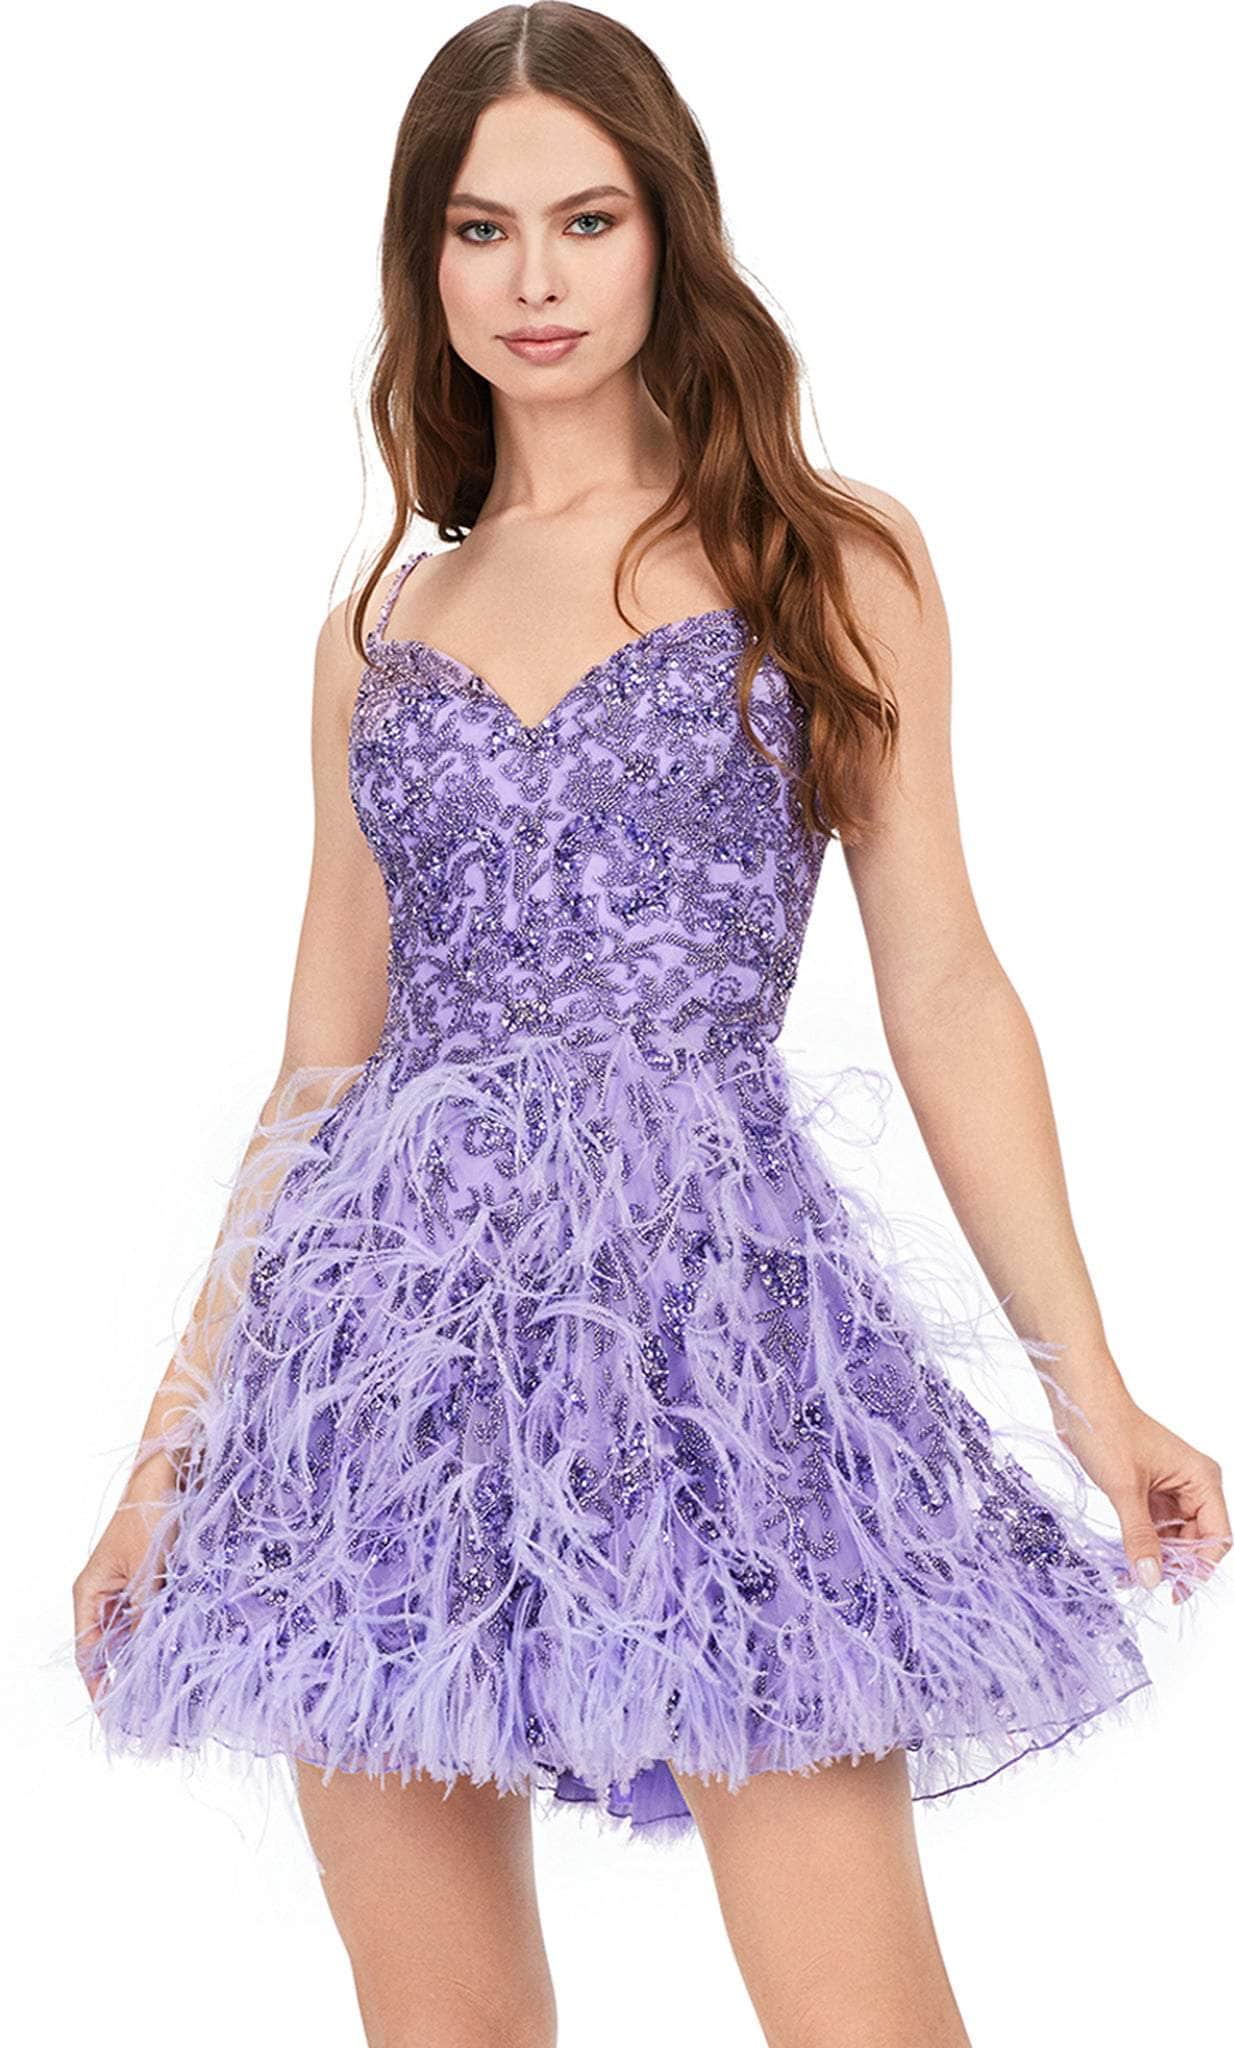 ashley lauren 4604 - sweetheart dress